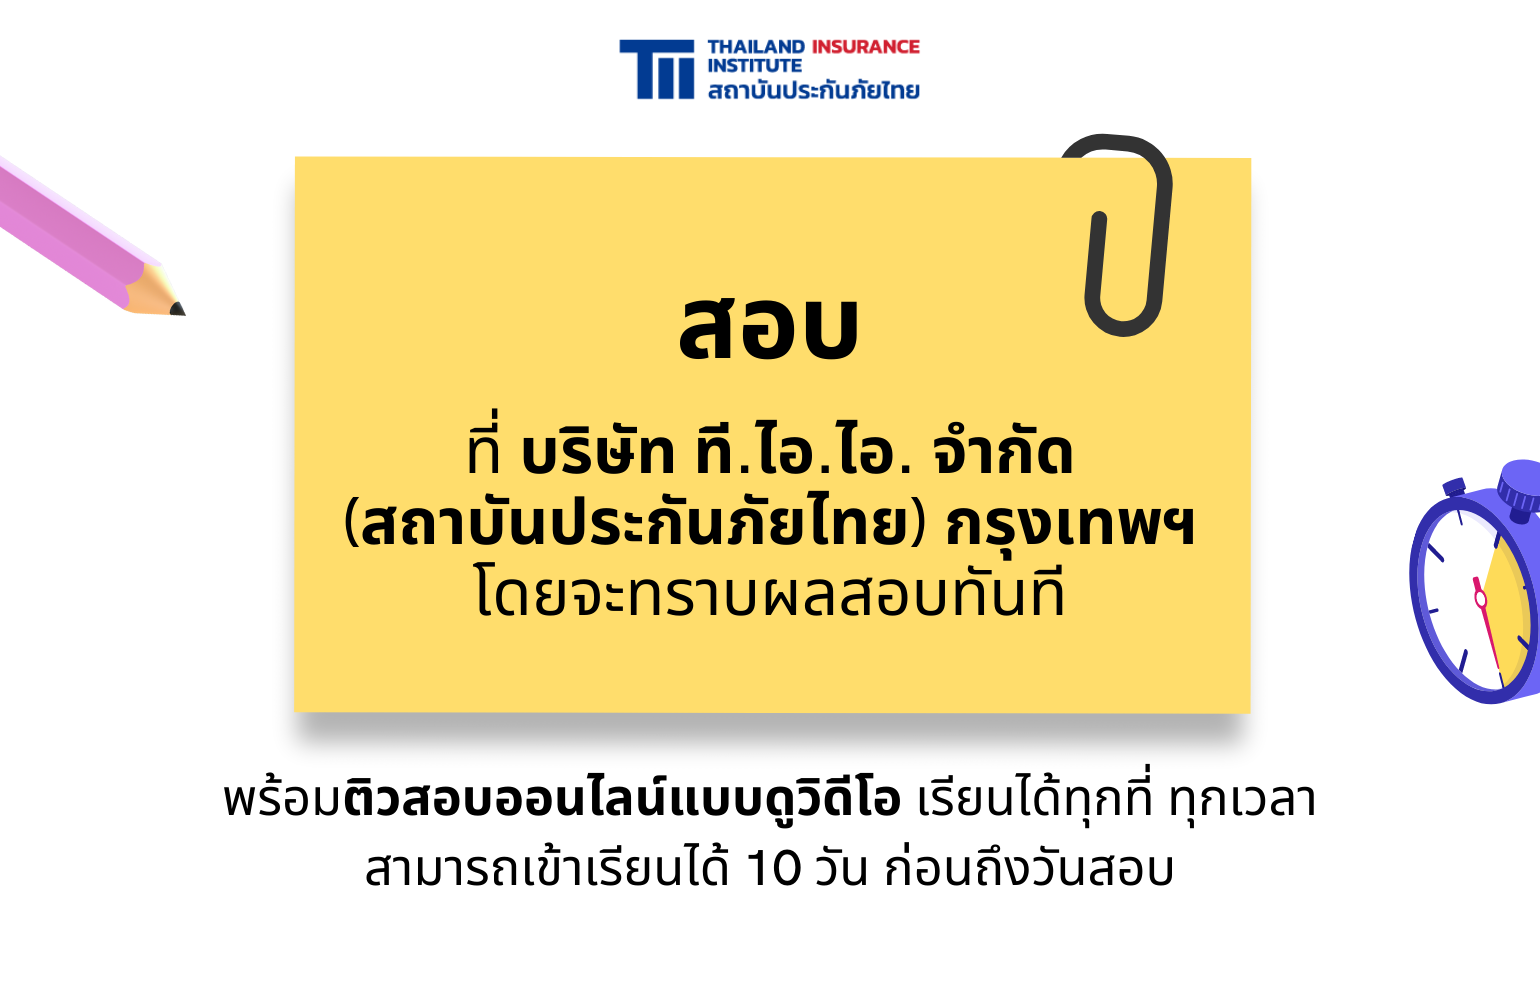 สถาบันประกันภัยไทยจัดหลักสูตรติว+สอบนายหน้าฯ ปี 2565 4